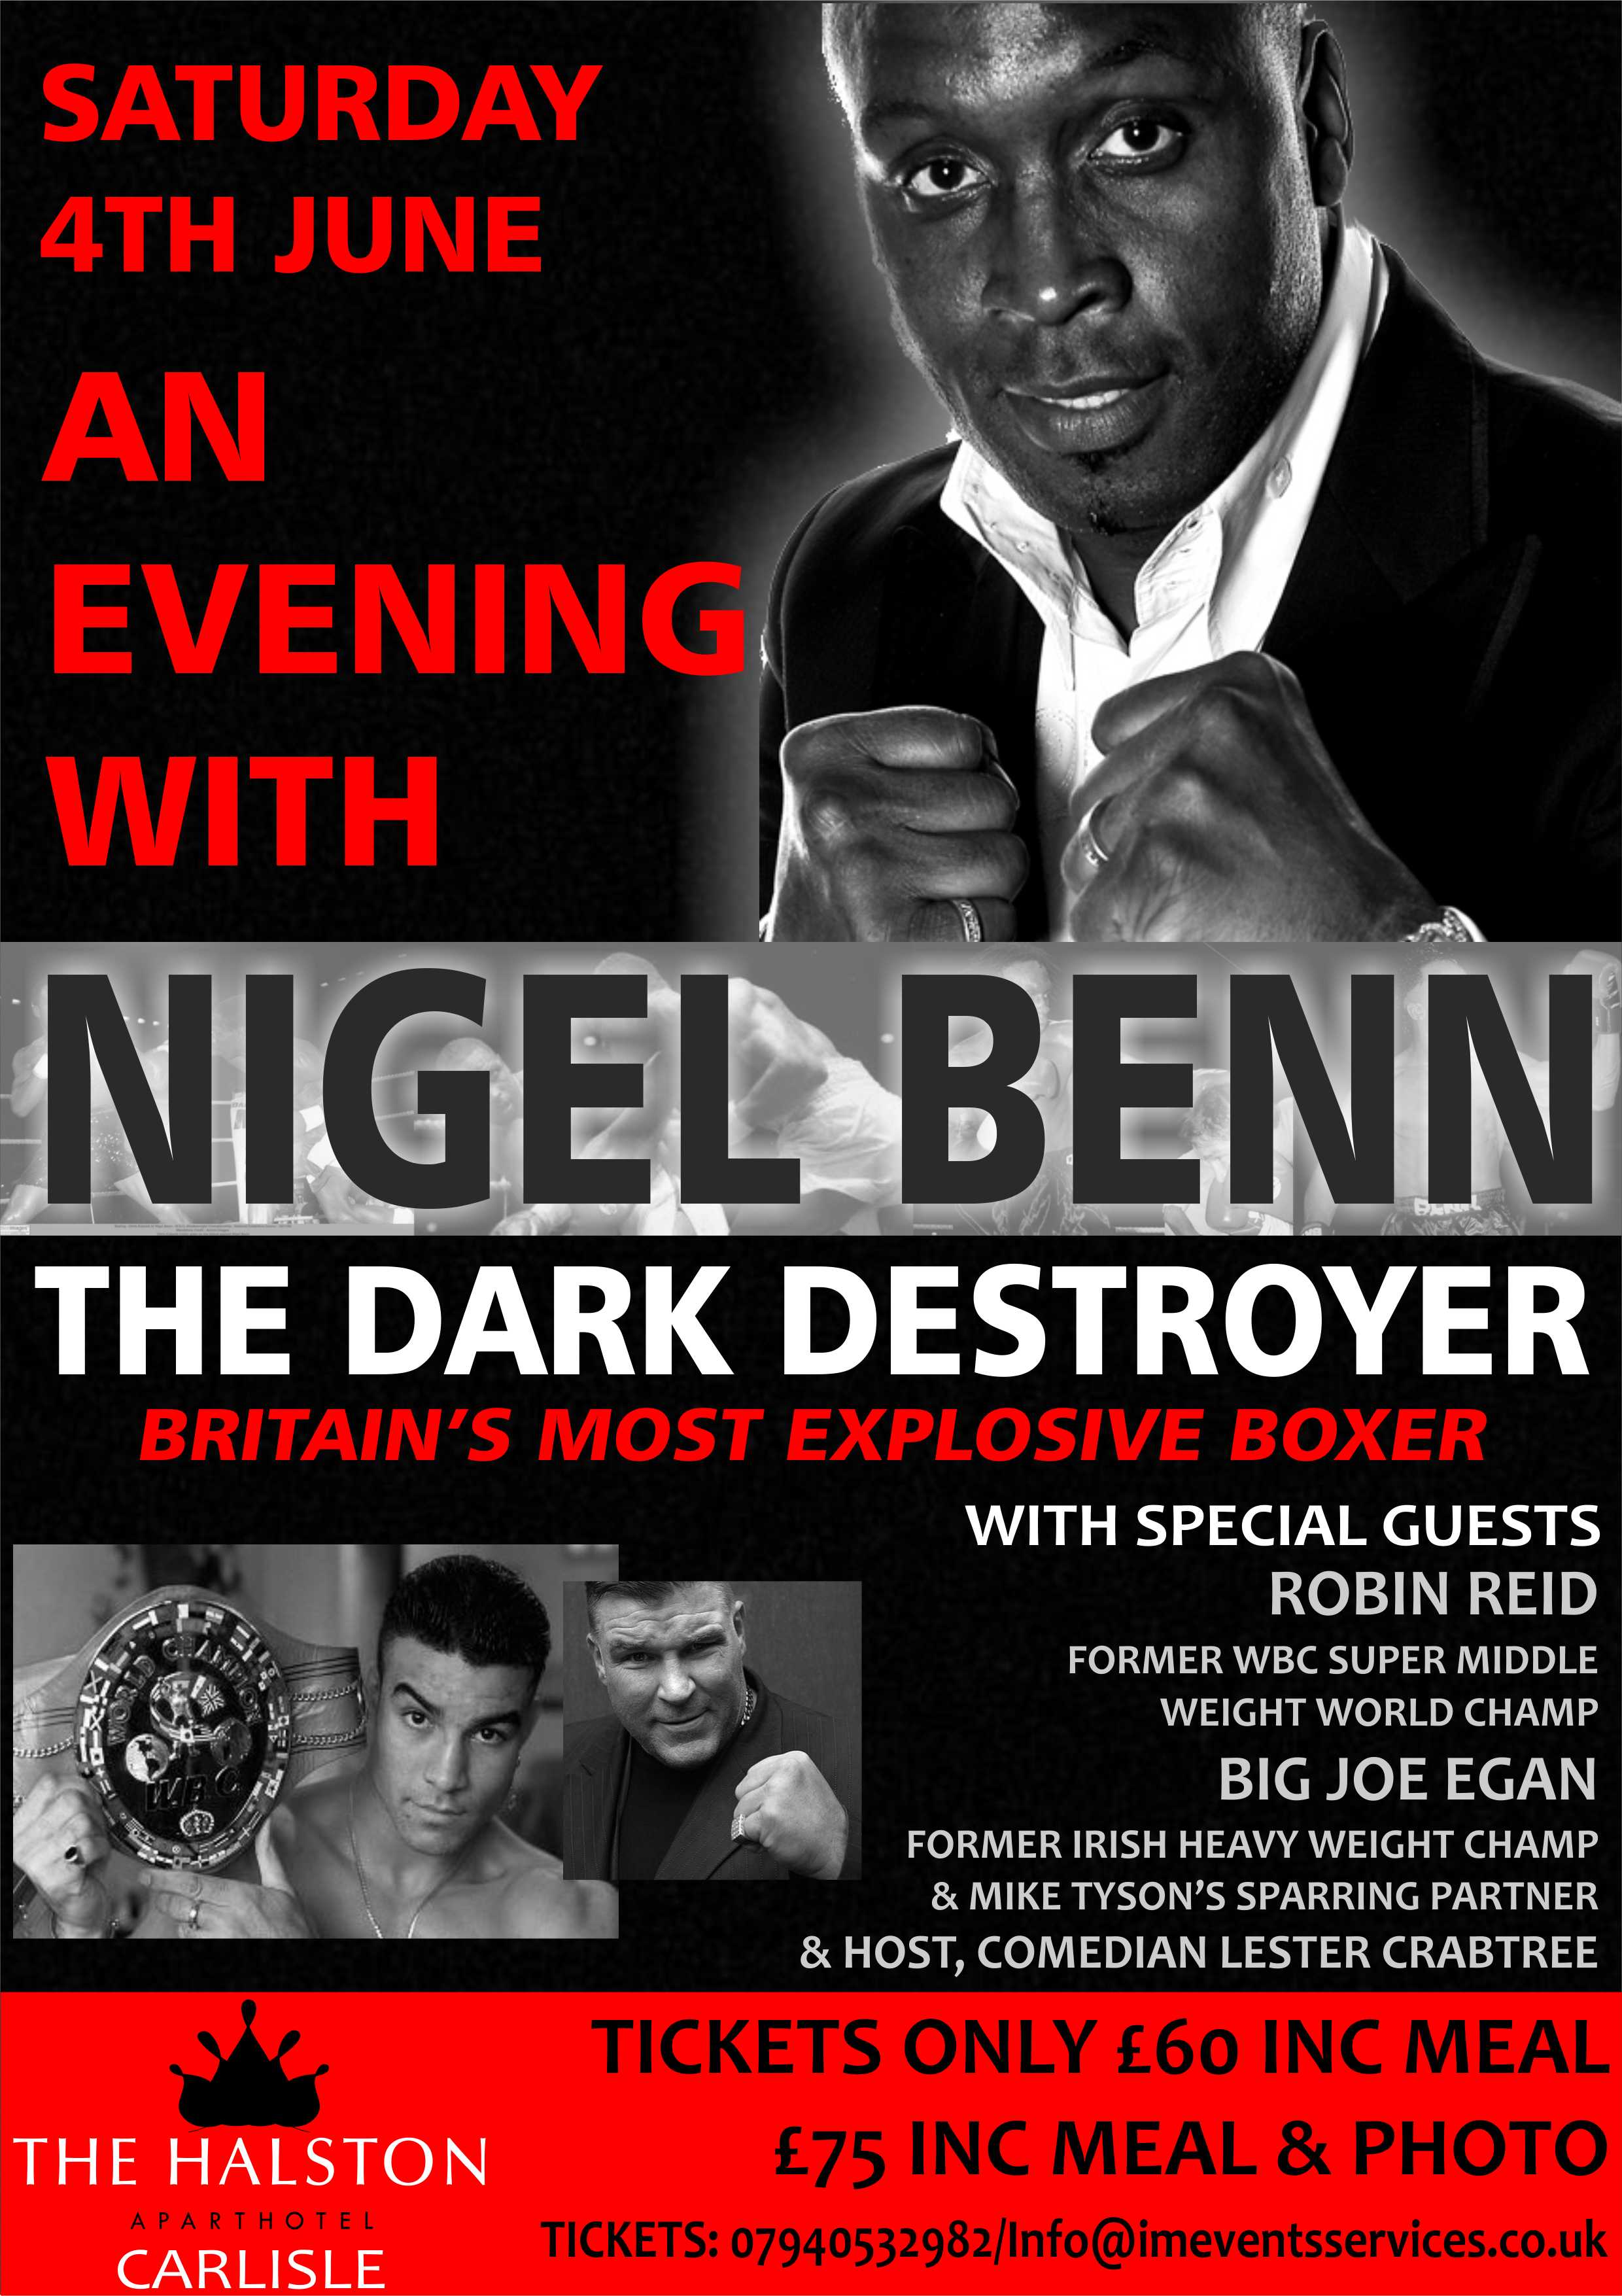 An Evening with Nigel Benn